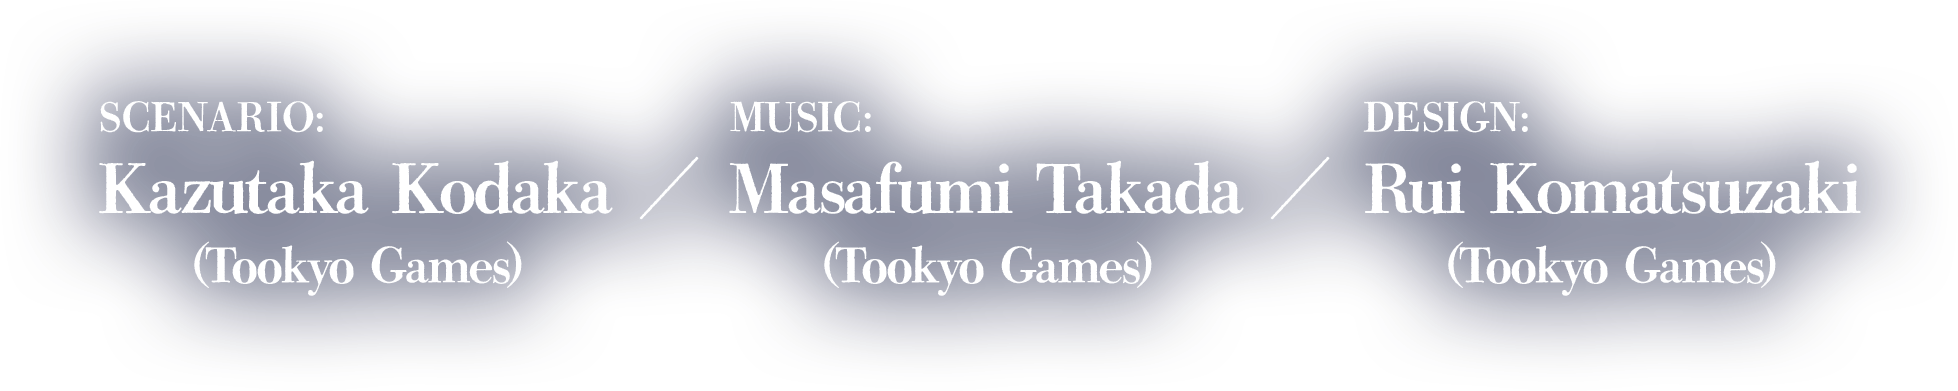 Scénario :Kazutaka Kodaka (Tookyo Games)Musique :Masafumi Takada (Tookyo Games)Design :Rui Komatsuzaki (Tookyo Games)